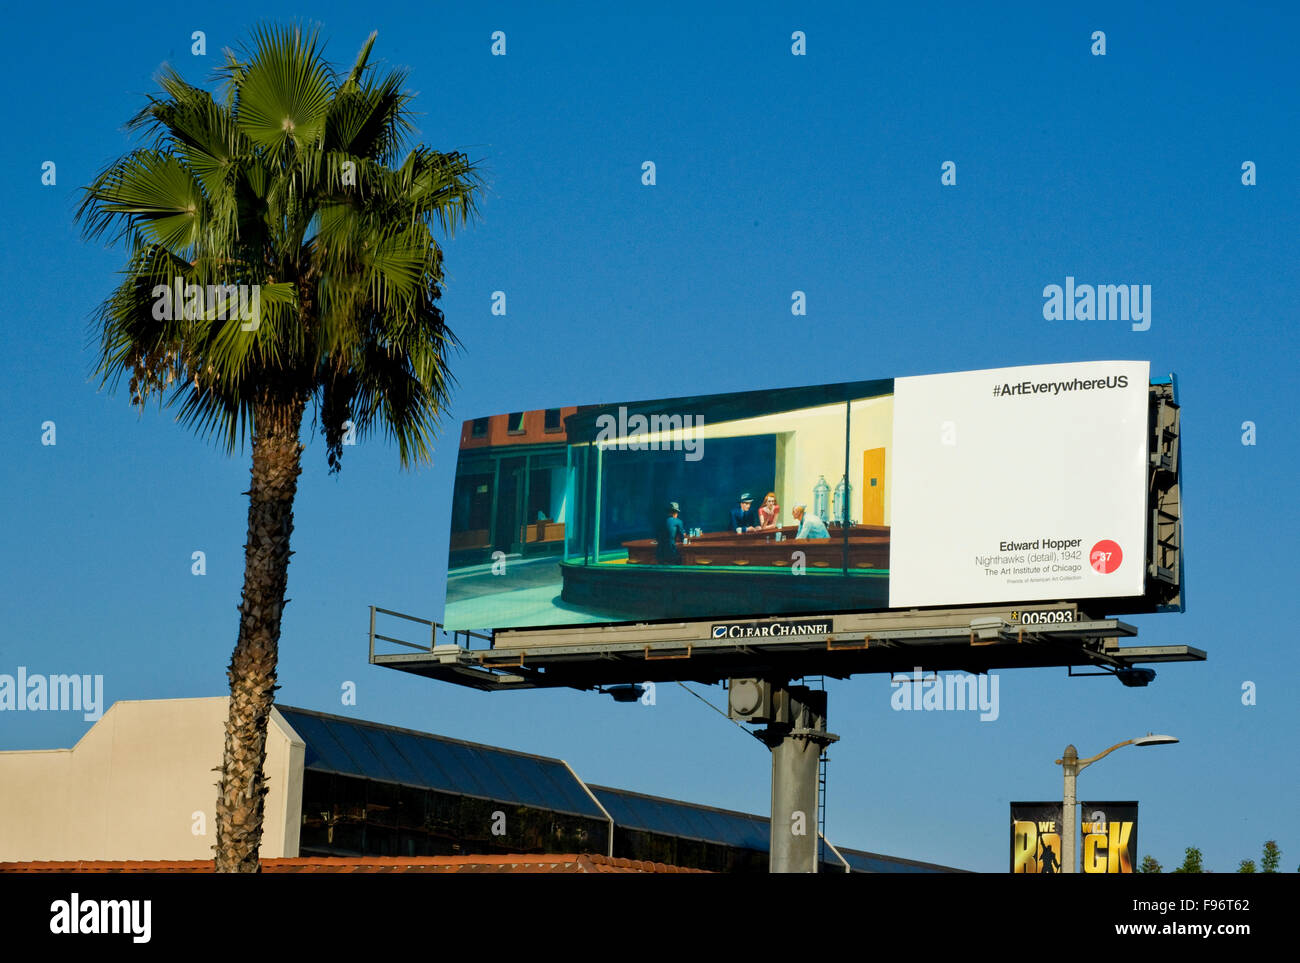 Un Edward Hopper arte pittura è riprodotto su un cartellone a Los Angeles in California durante l'arte ovunque evento. Foto Stock